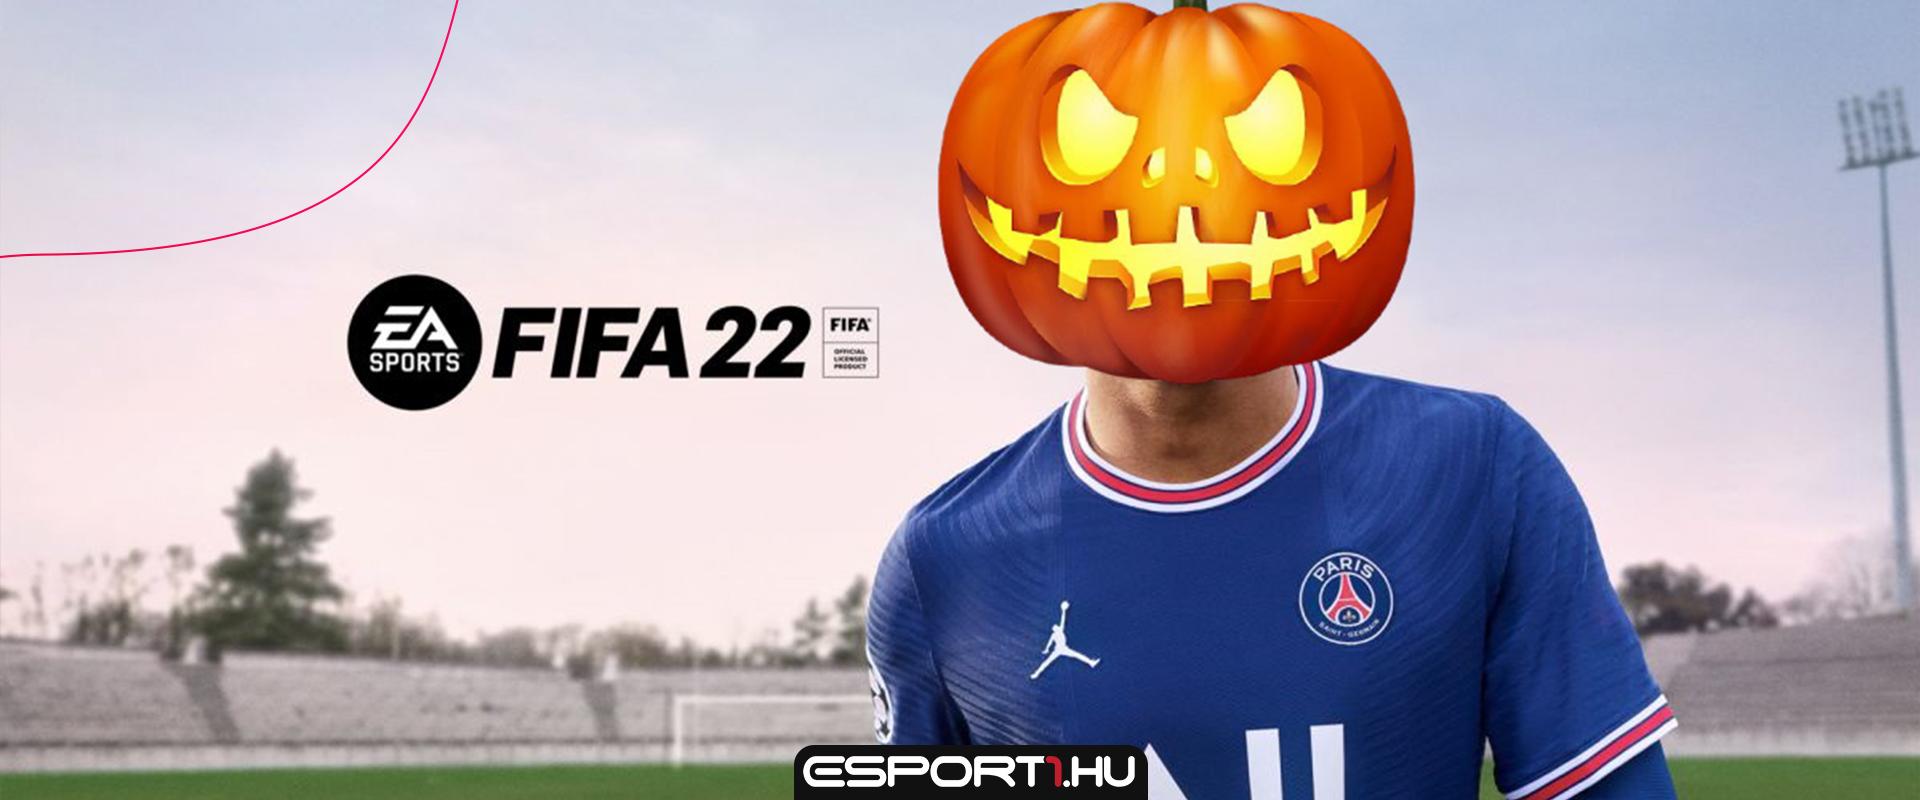 Már a FIFA 22-ben is elérhető a Halloweeni jutalom